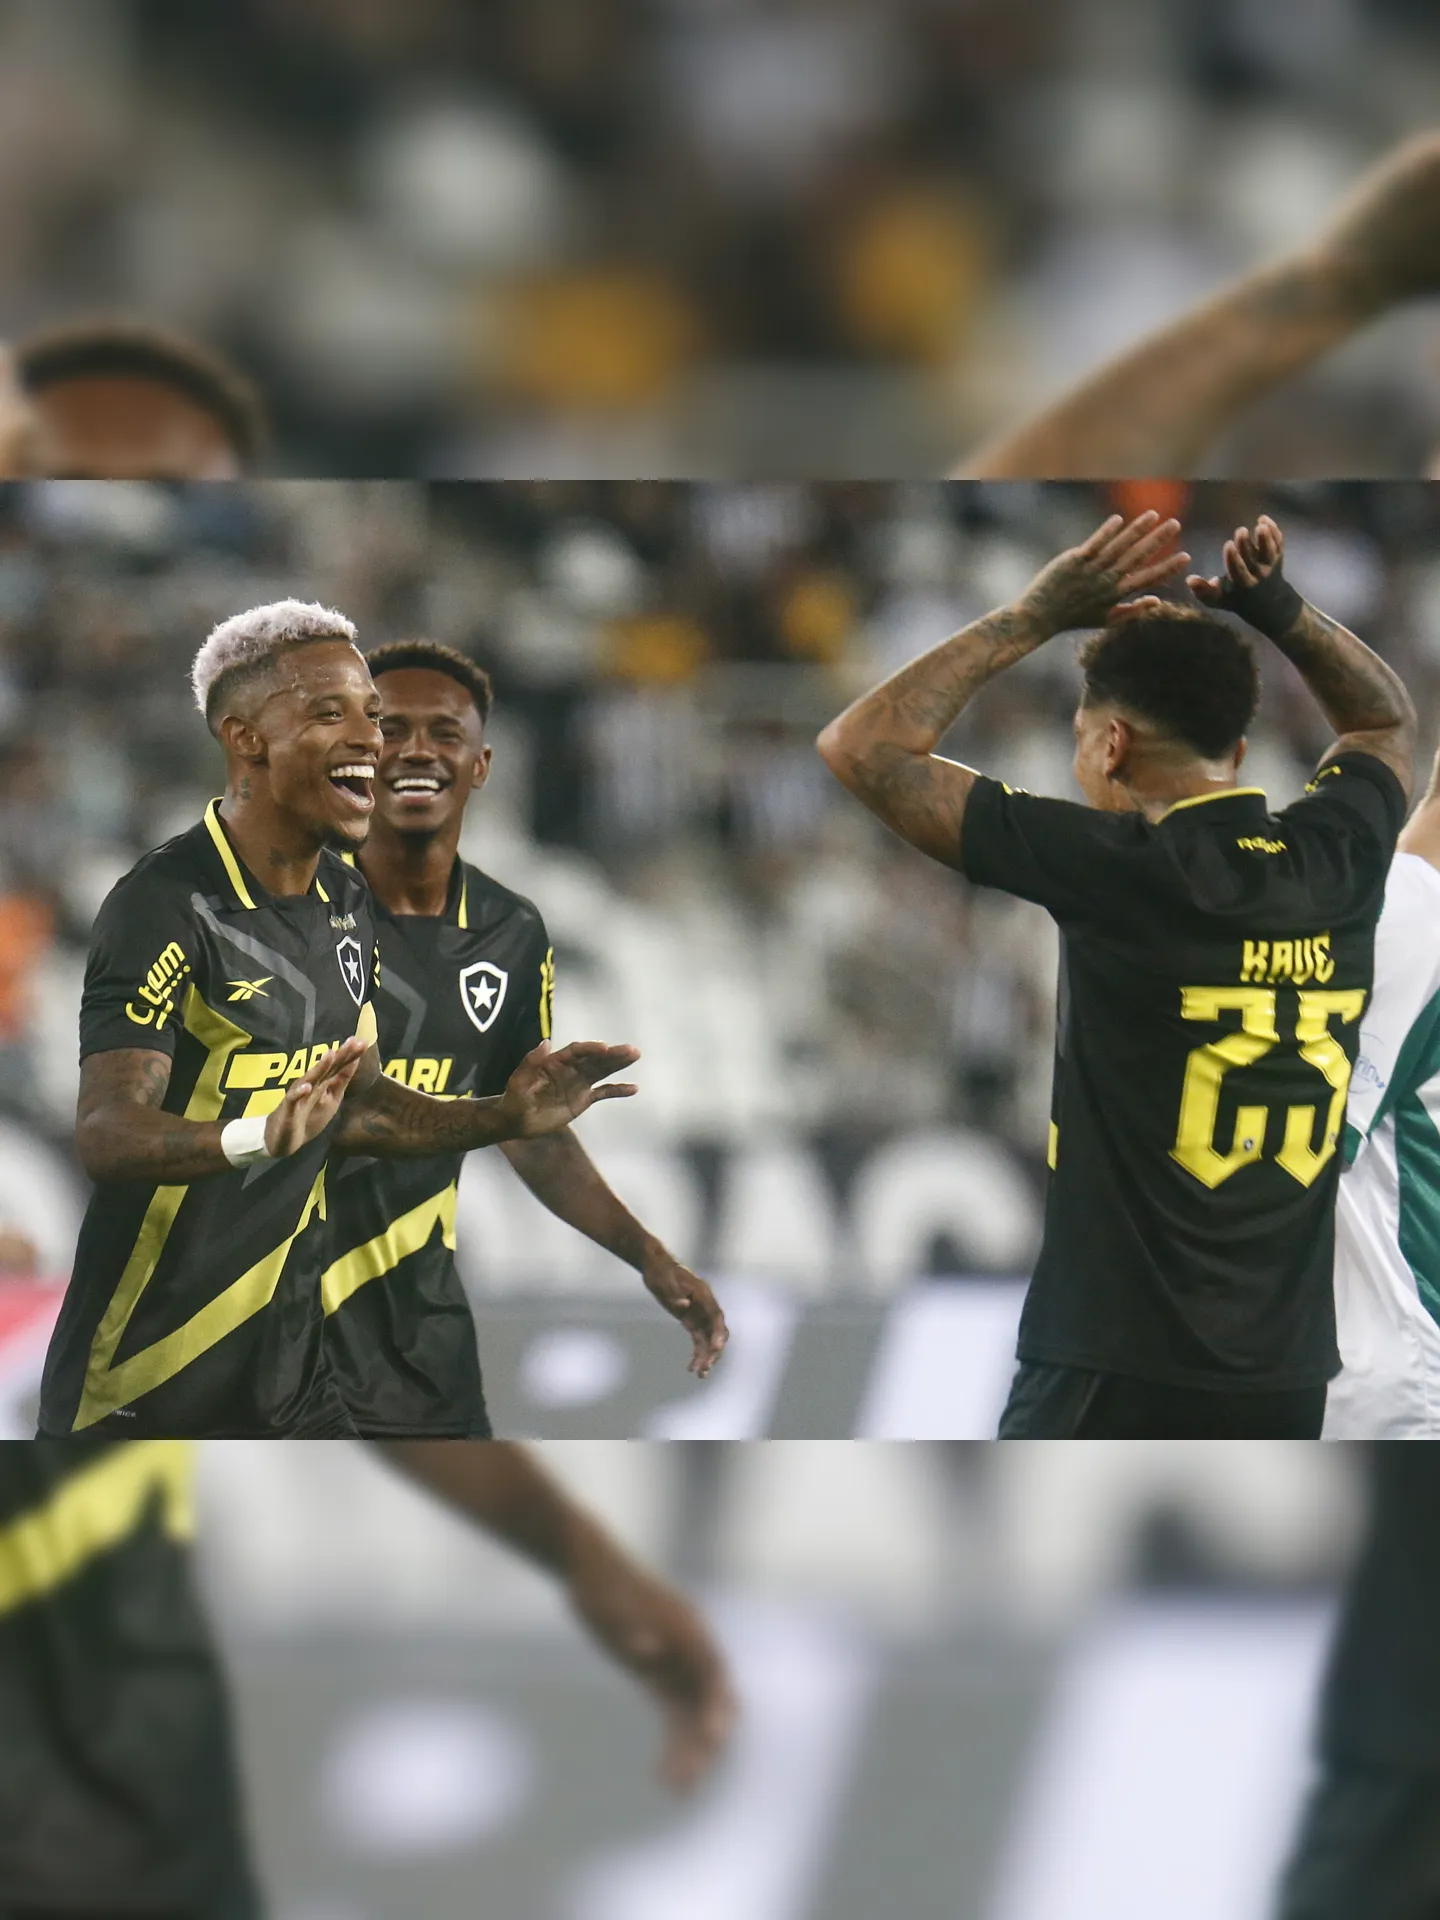 Pelo segundo ano seguido, o Botafogo conquistou a Taça Rio